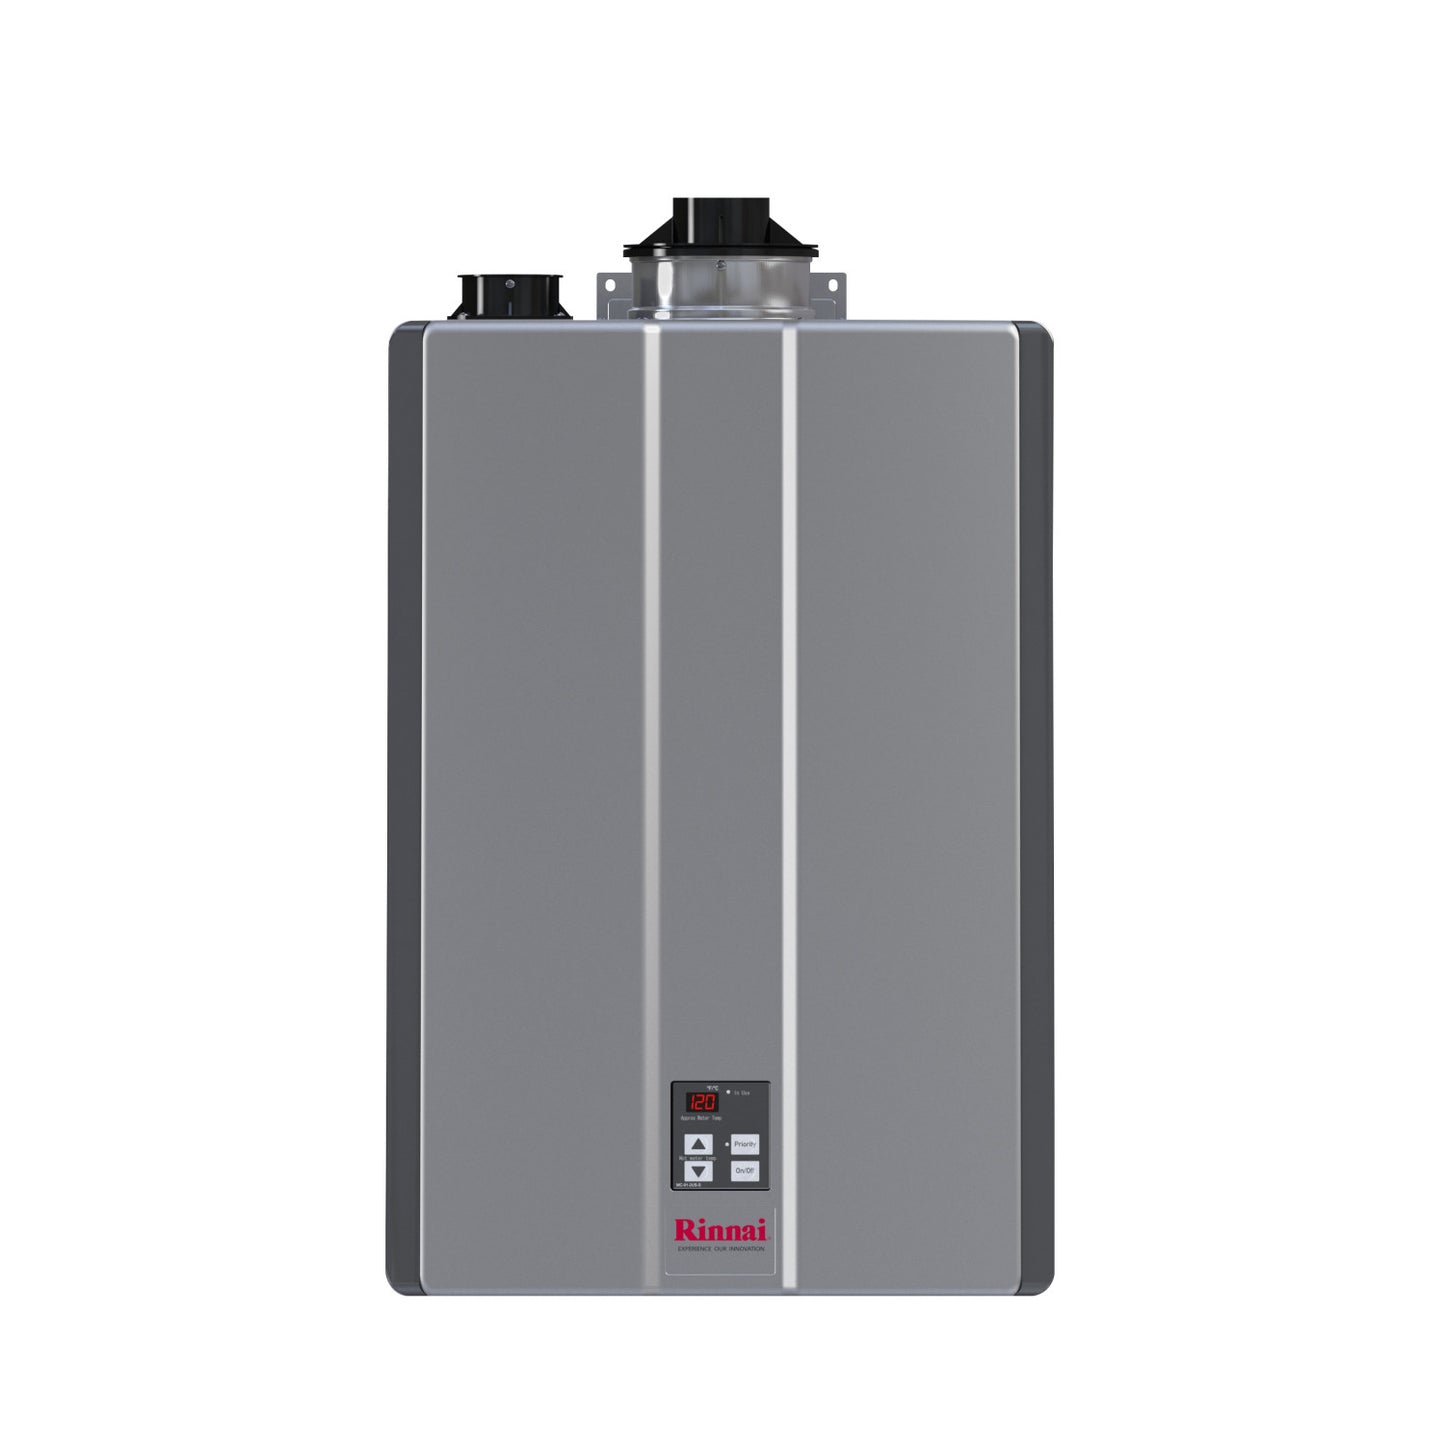 RU199IP - 199,000 BTU Super High Efficiency Condensing Indoor Tankless Water Heater - LP